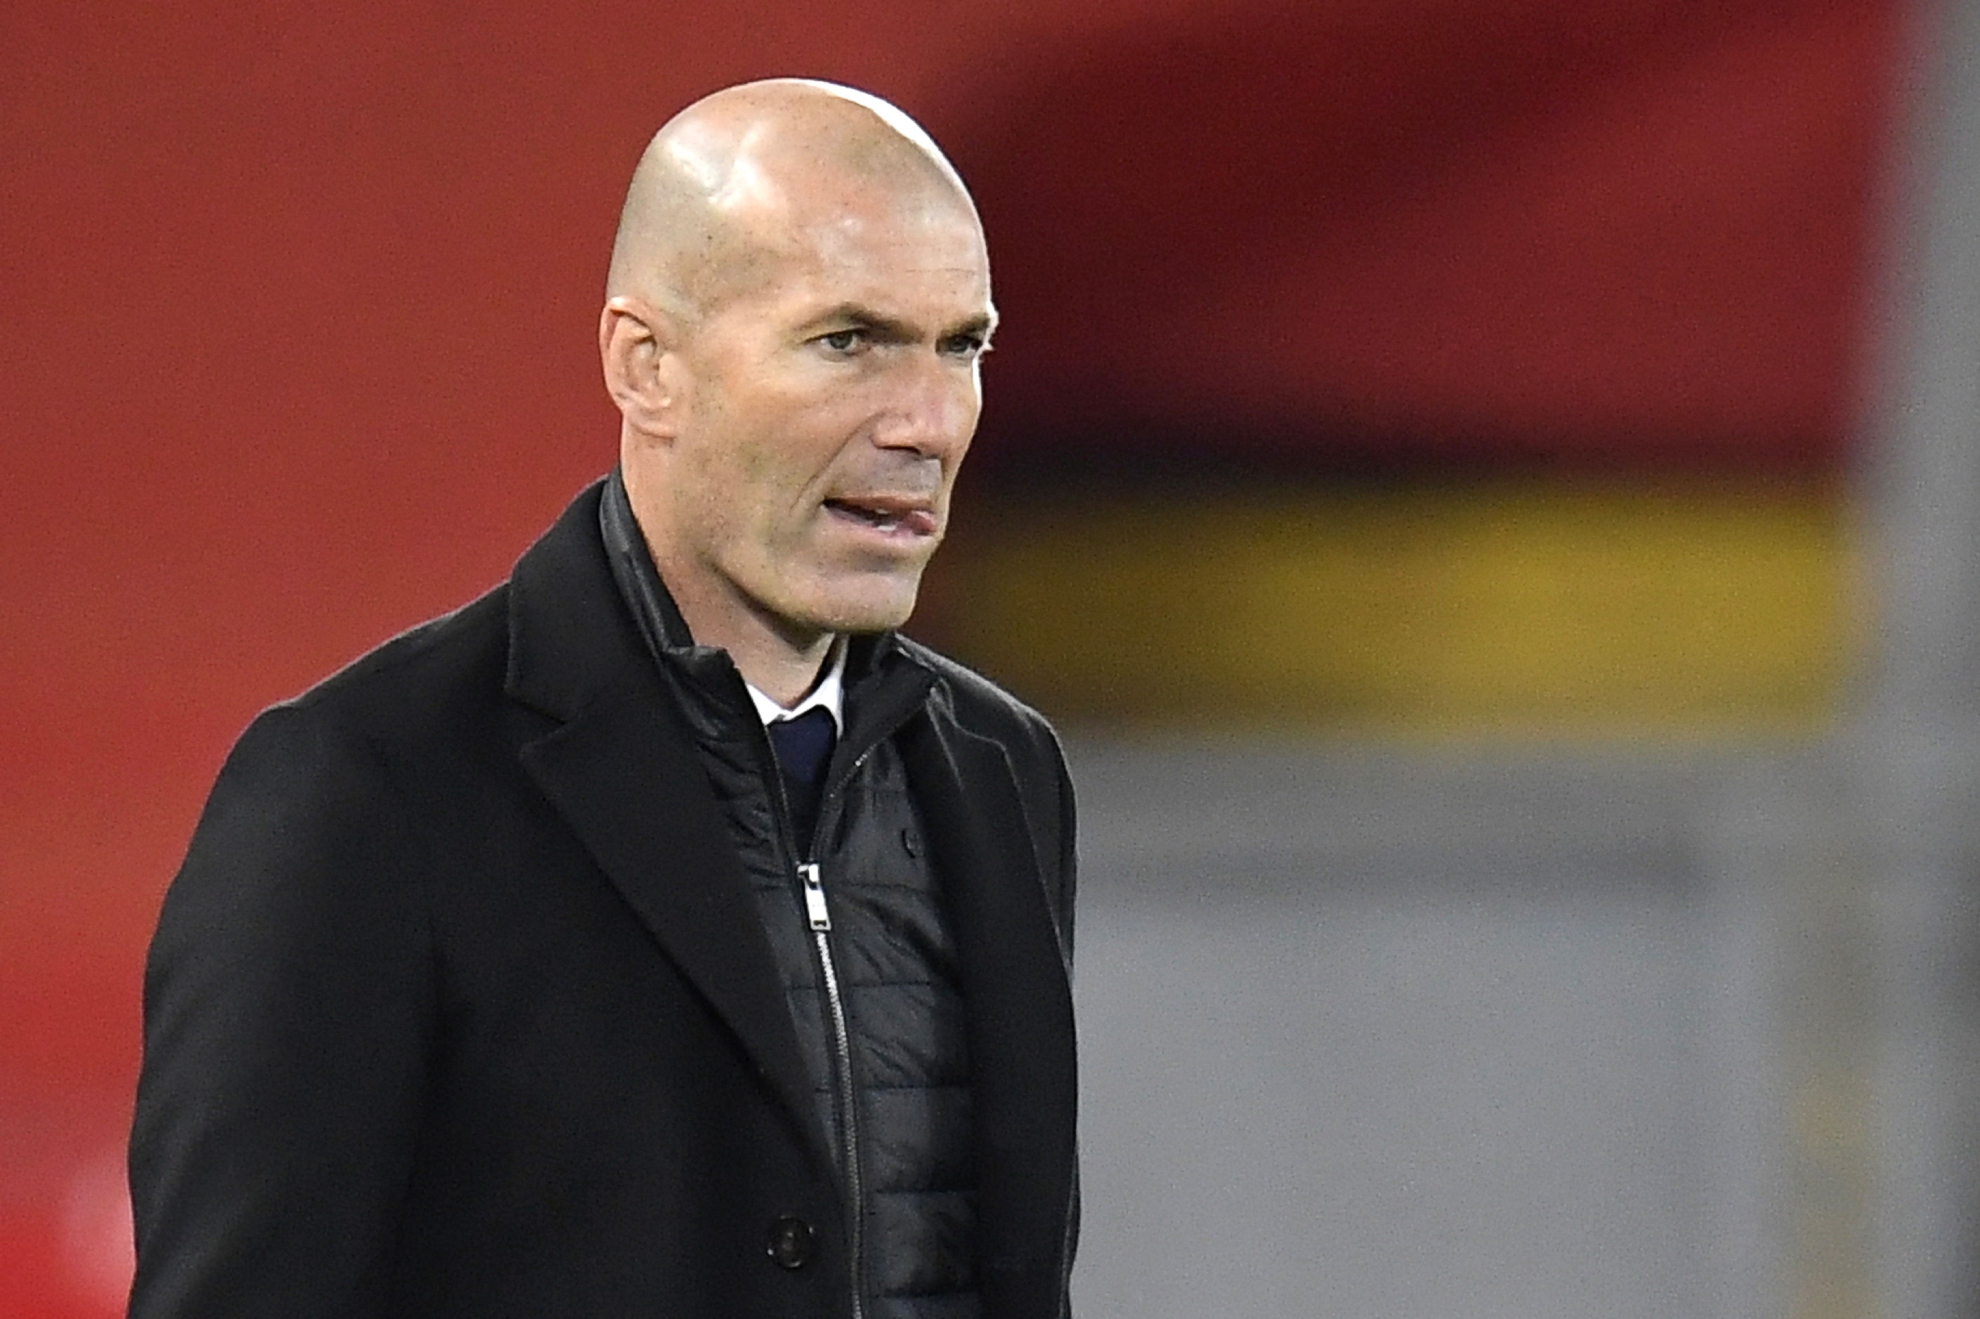  L’ultime décision de Zidane, il ne veut entraîner que ces 3 équipes !